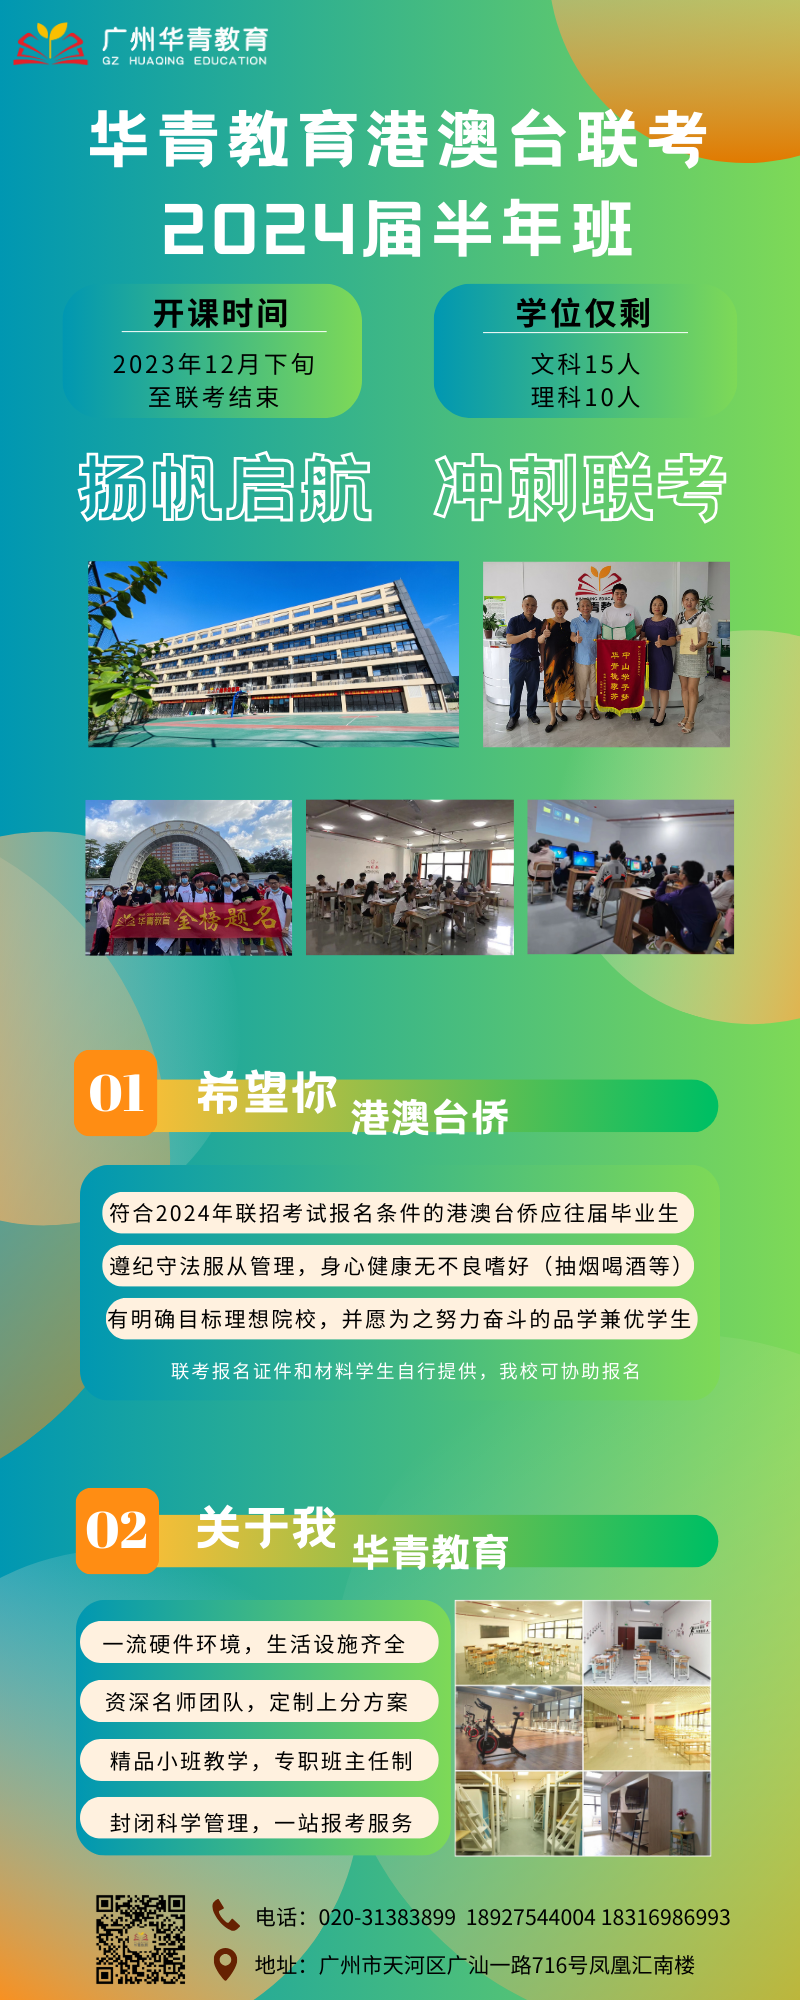 橙绿色社区志愿者招募手绘公益公益中文信息图表.png